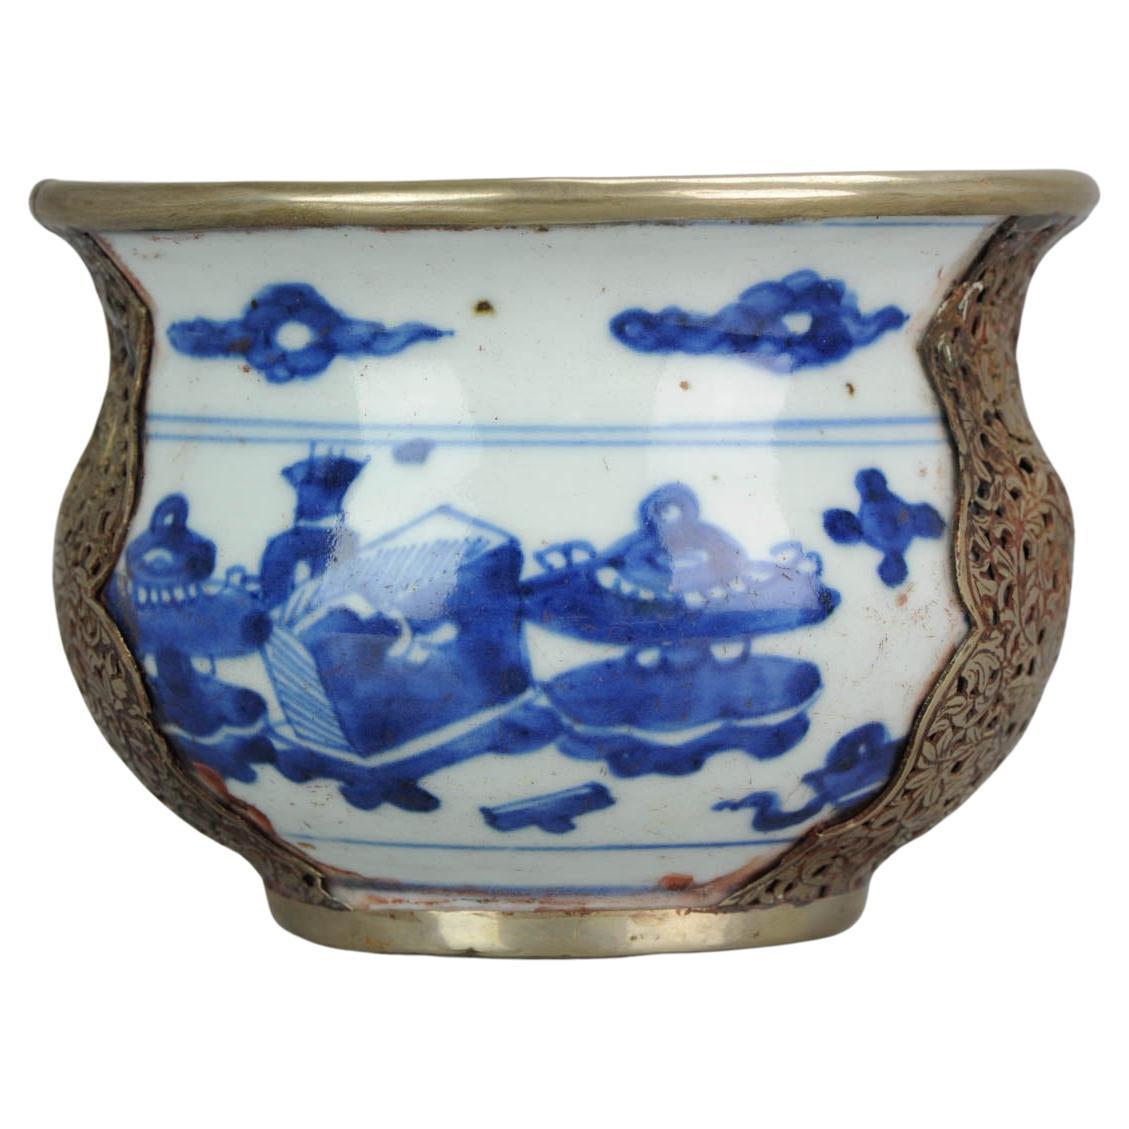  Rare bol en porcelaine chinoise Kangxi transitionnel du 17ème siècle